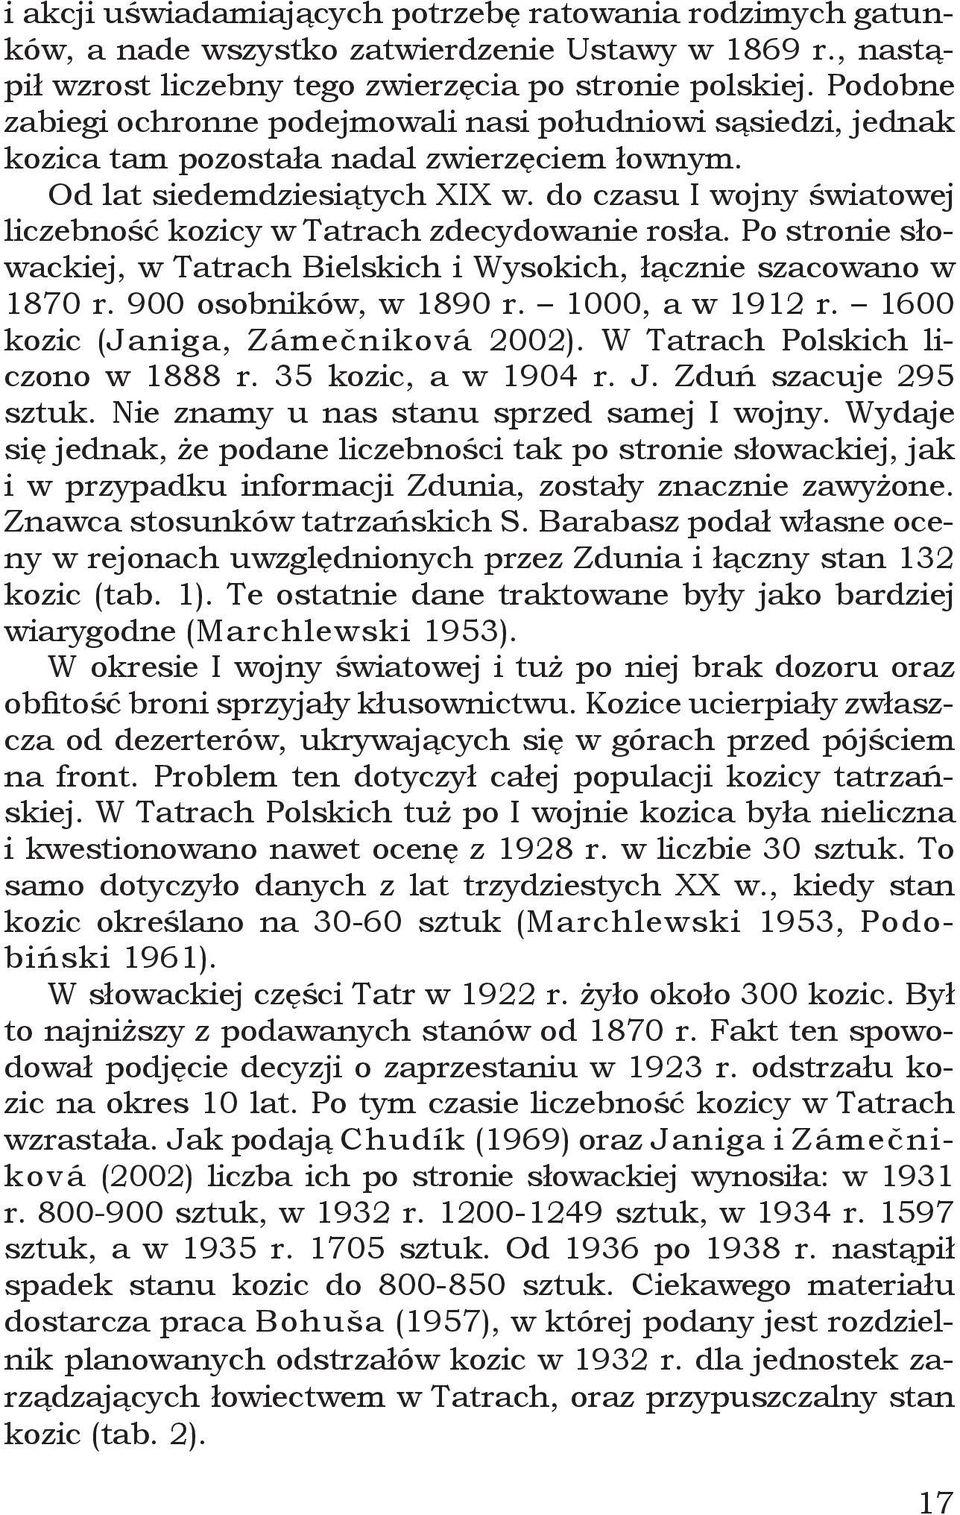 do czasu I wojny światowej liczebność kozicy w Tatrach zdecydowanie rosła. Po stronie słowackiej, w Tatrach Bielskich i Wysokich, łącznie szacowano w 1870 r. 900 osobników, w 1890 r. 1000, a w 1912 r.